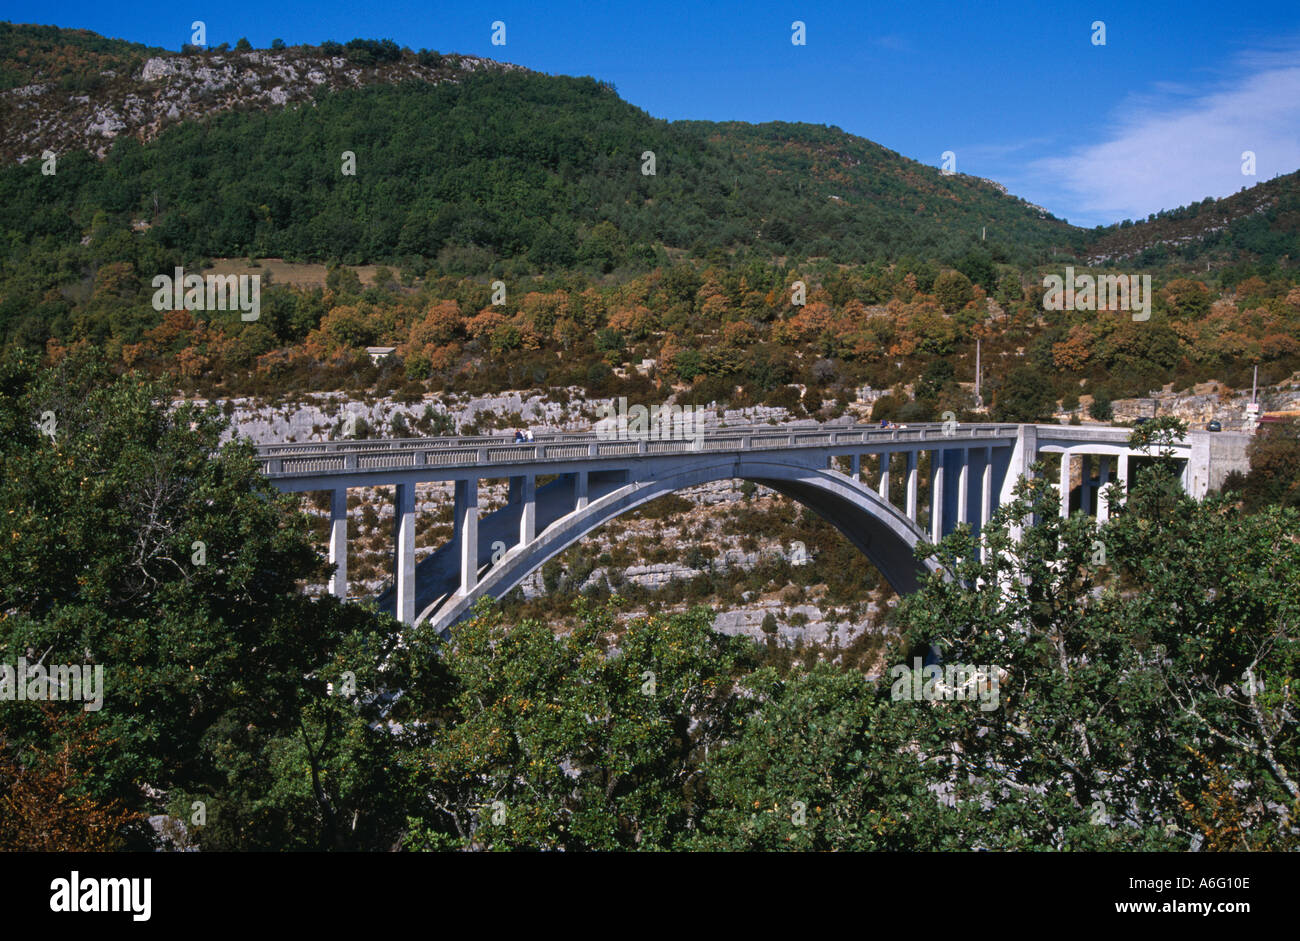 Pont de L' artuby in the Gorges du Verdon Stock Photo